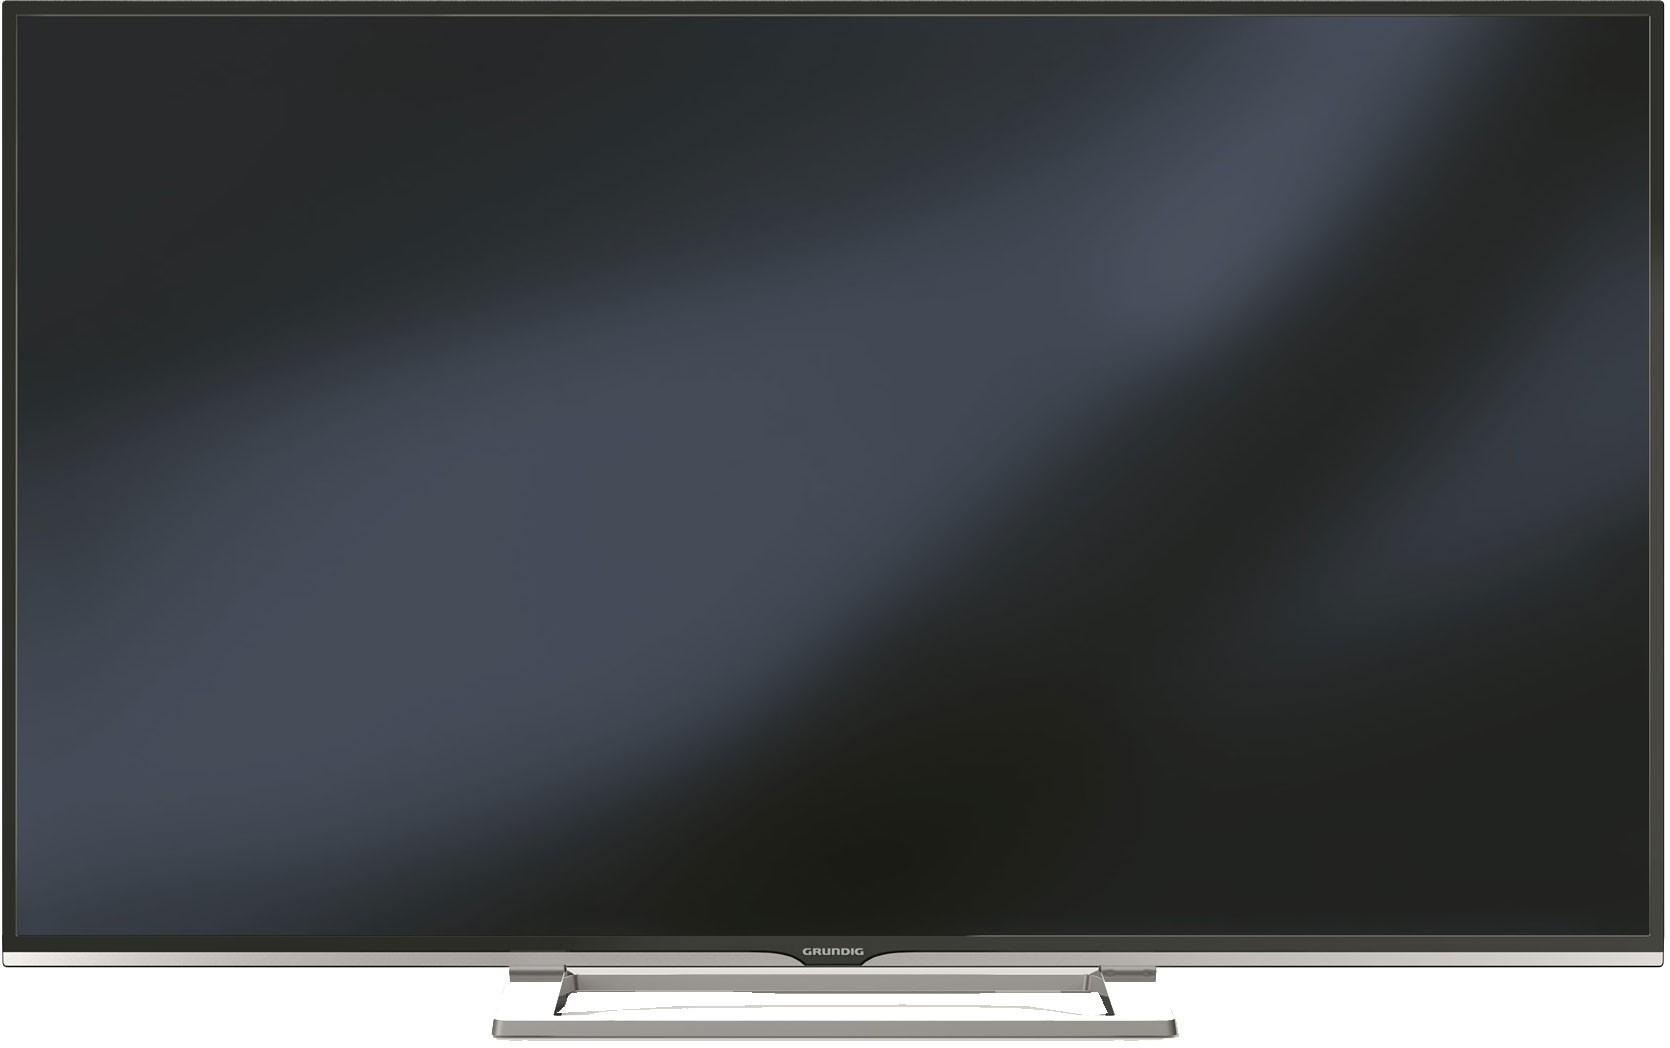 Grundig VLE8460 kan være et godt alternativ til VLE8500 om du ønsker en større TV. Foto: Grundig